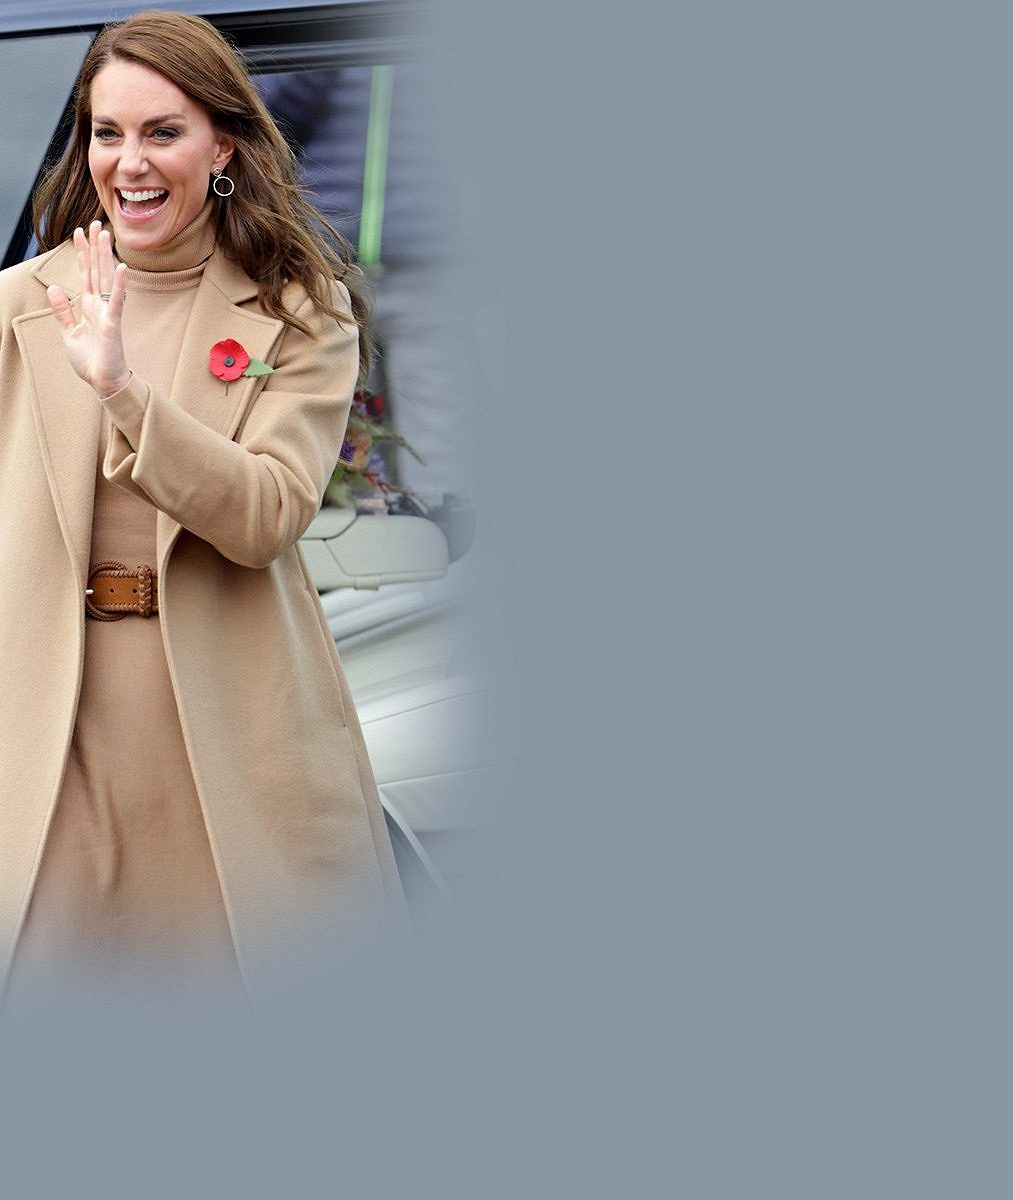 Klenot britské královské rodiny: Princezna Kate na banketu ohromila v korunce po Dianě